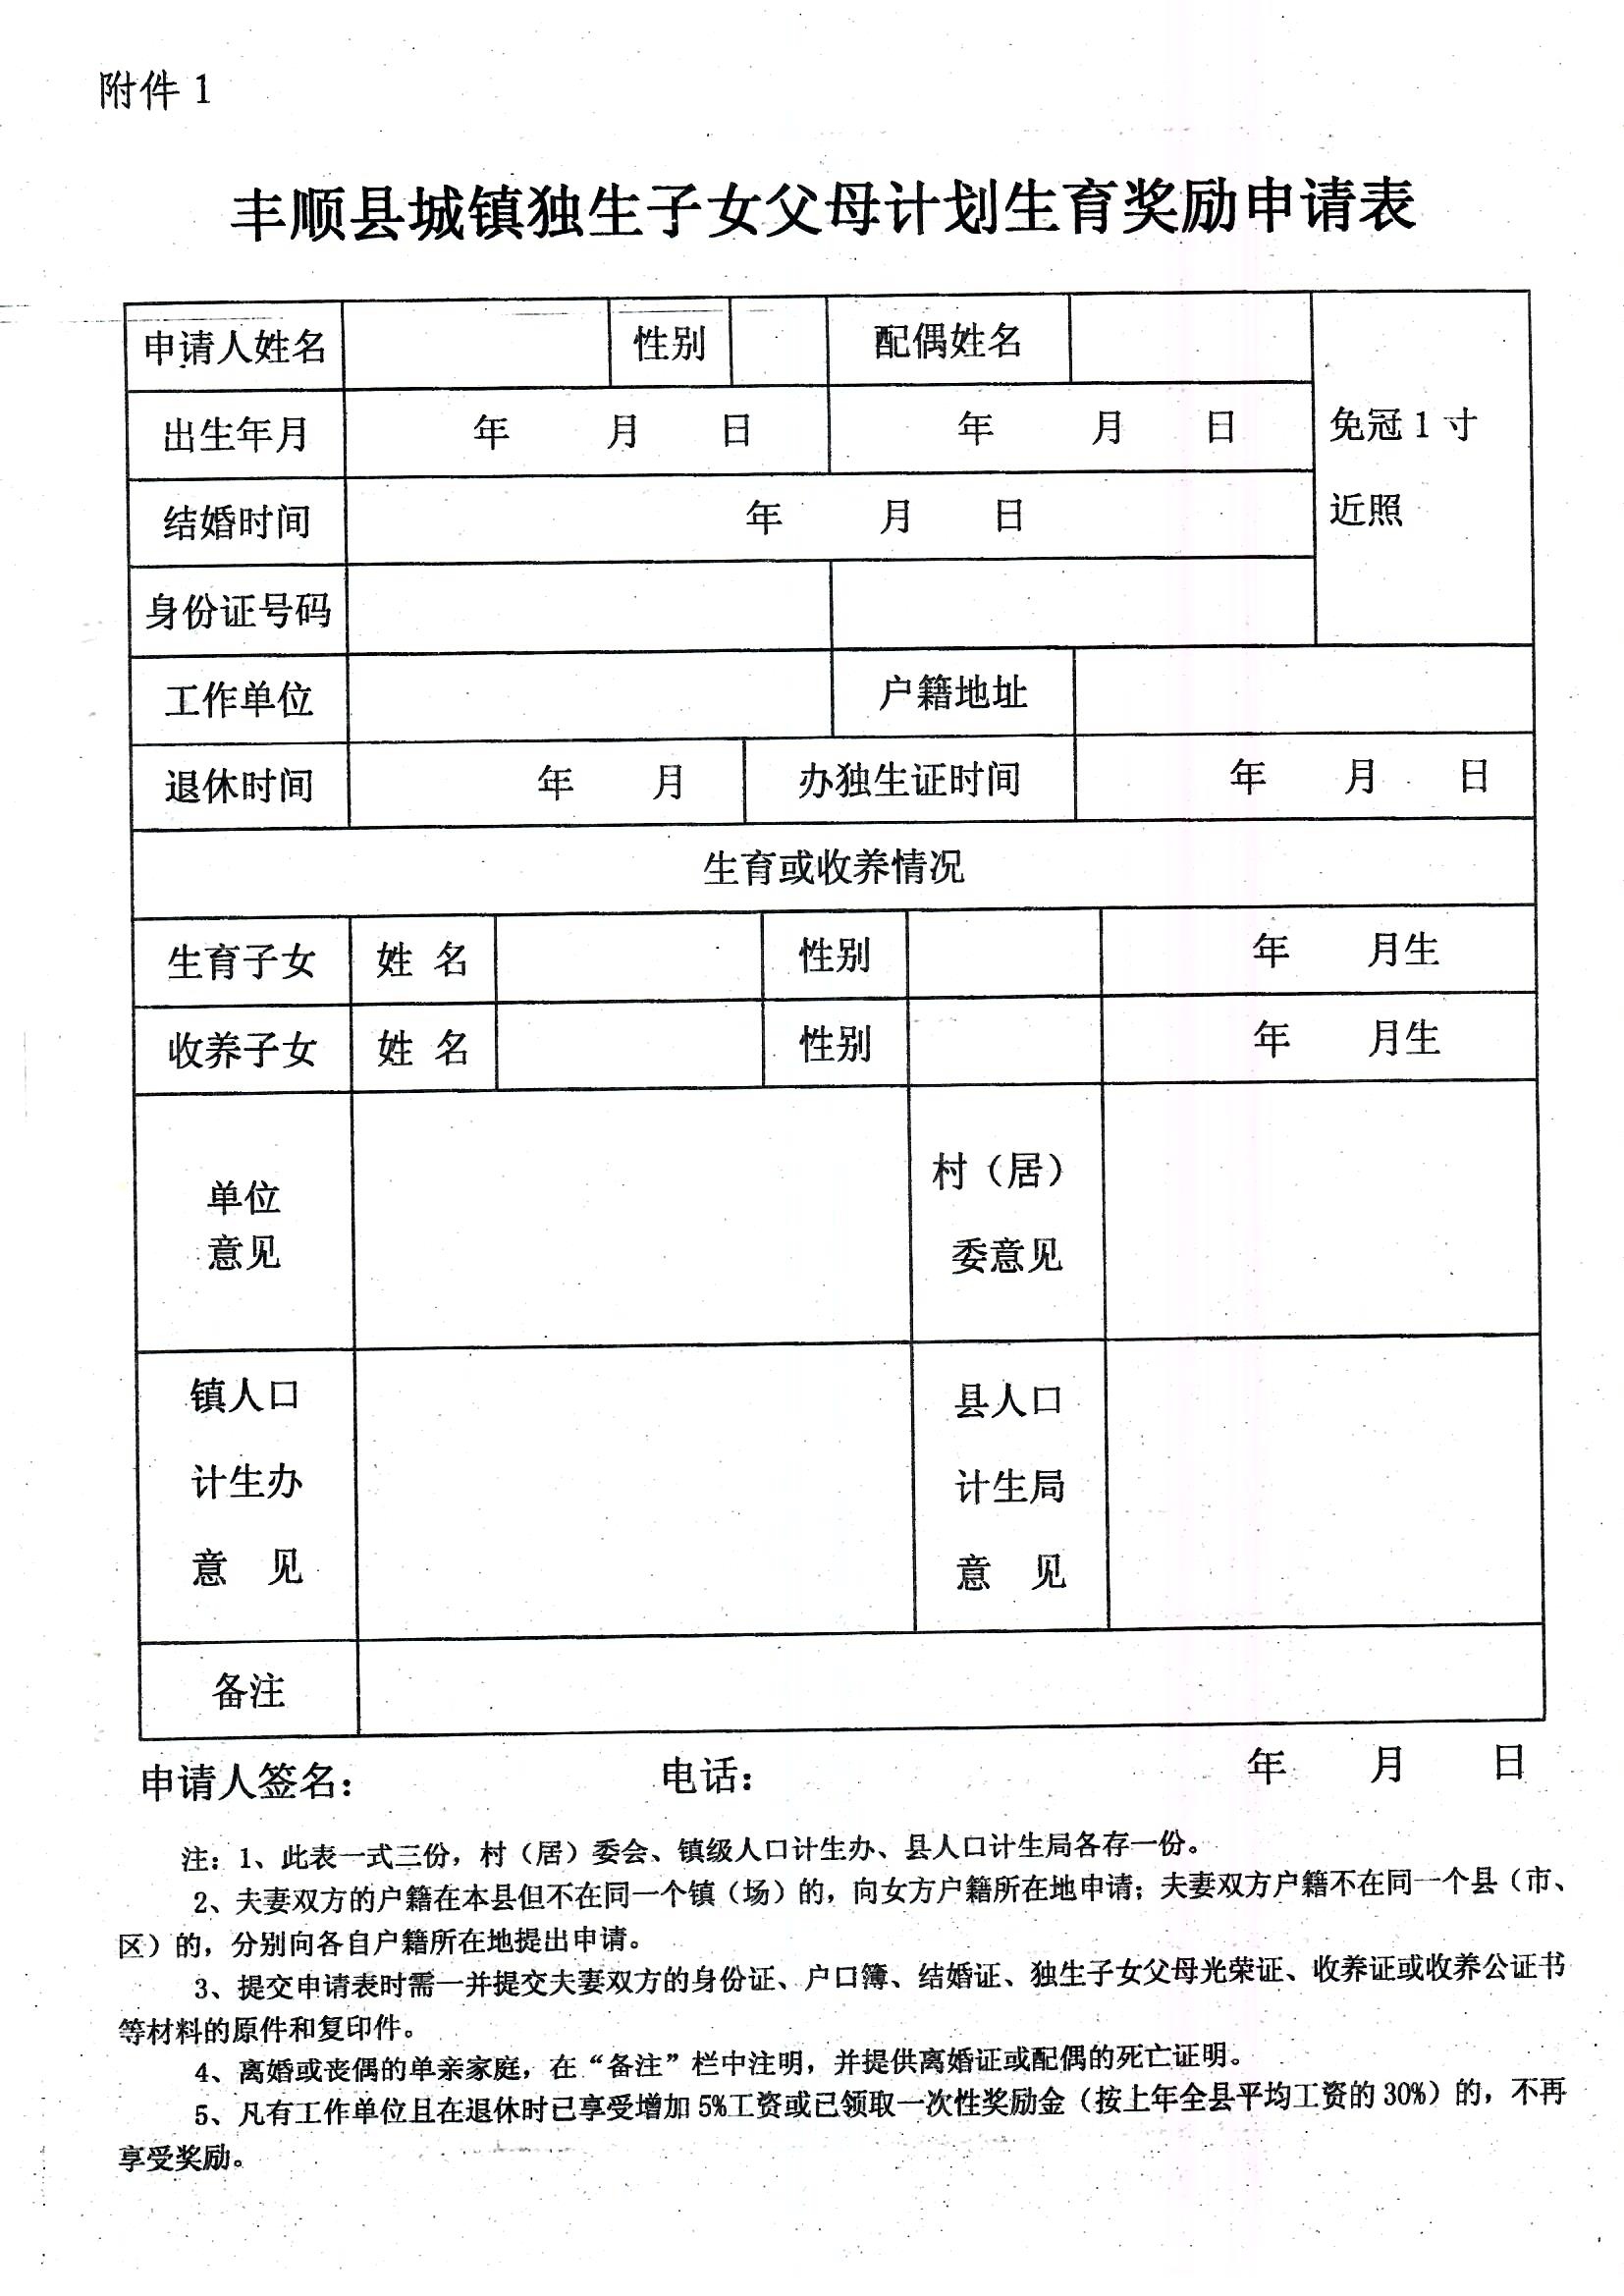 印发丰顺县城镇独生子女父母计划生育奖励办法的通知_页面_7.jpg